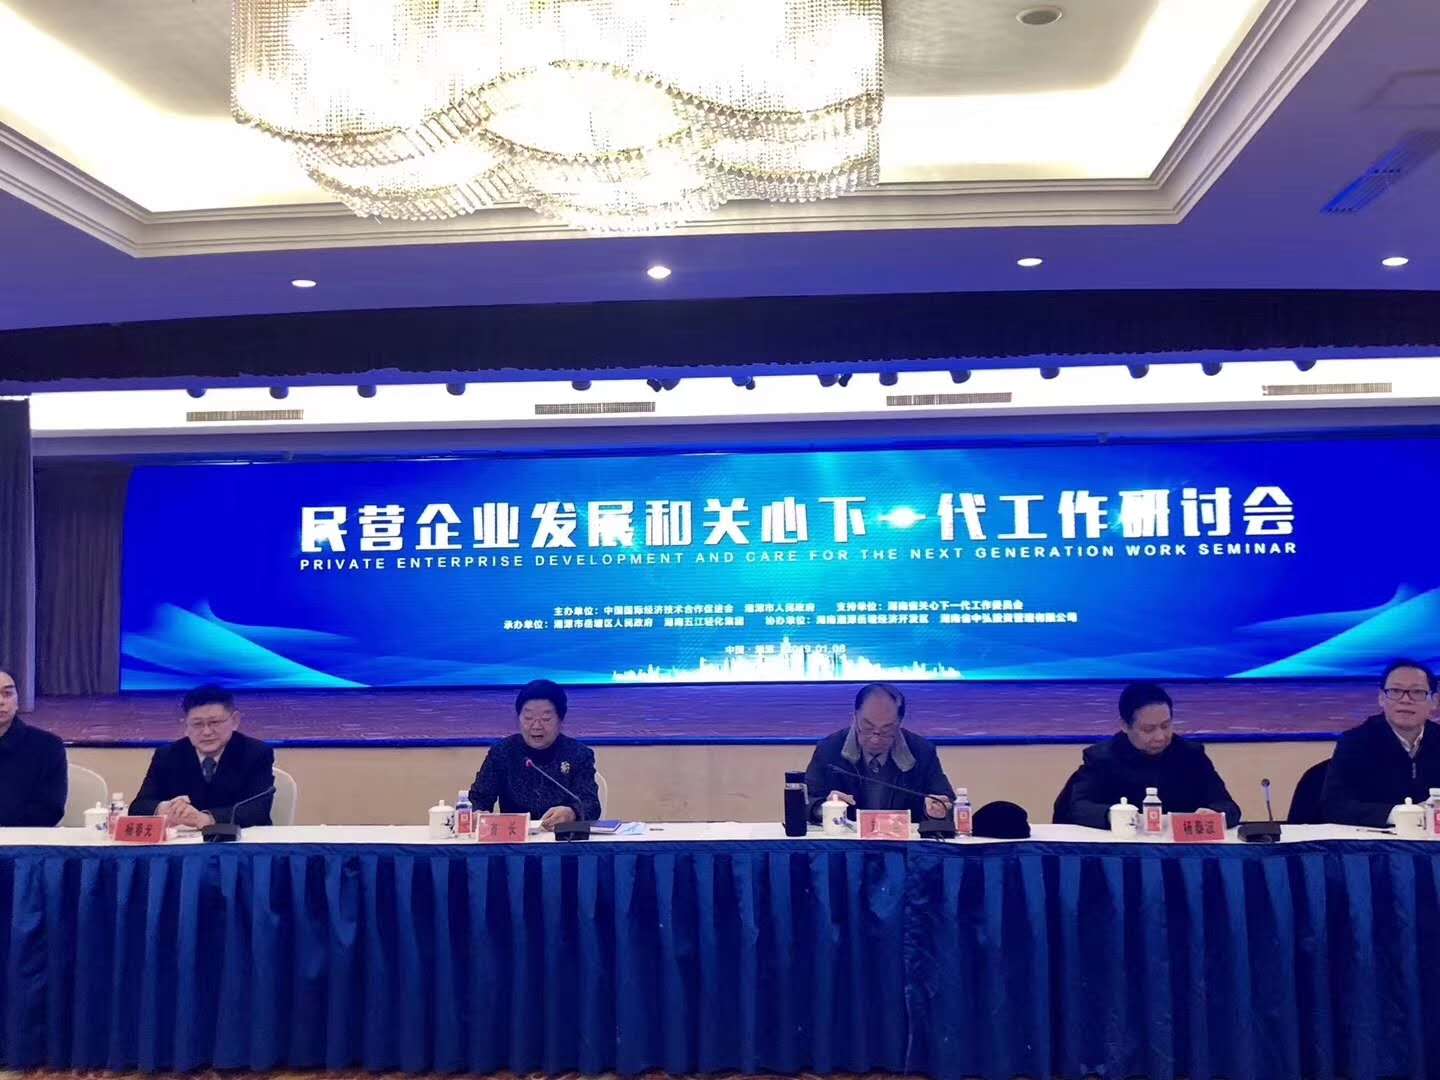 民营经济发展和关心下一代工作研讨会在湘潭召开